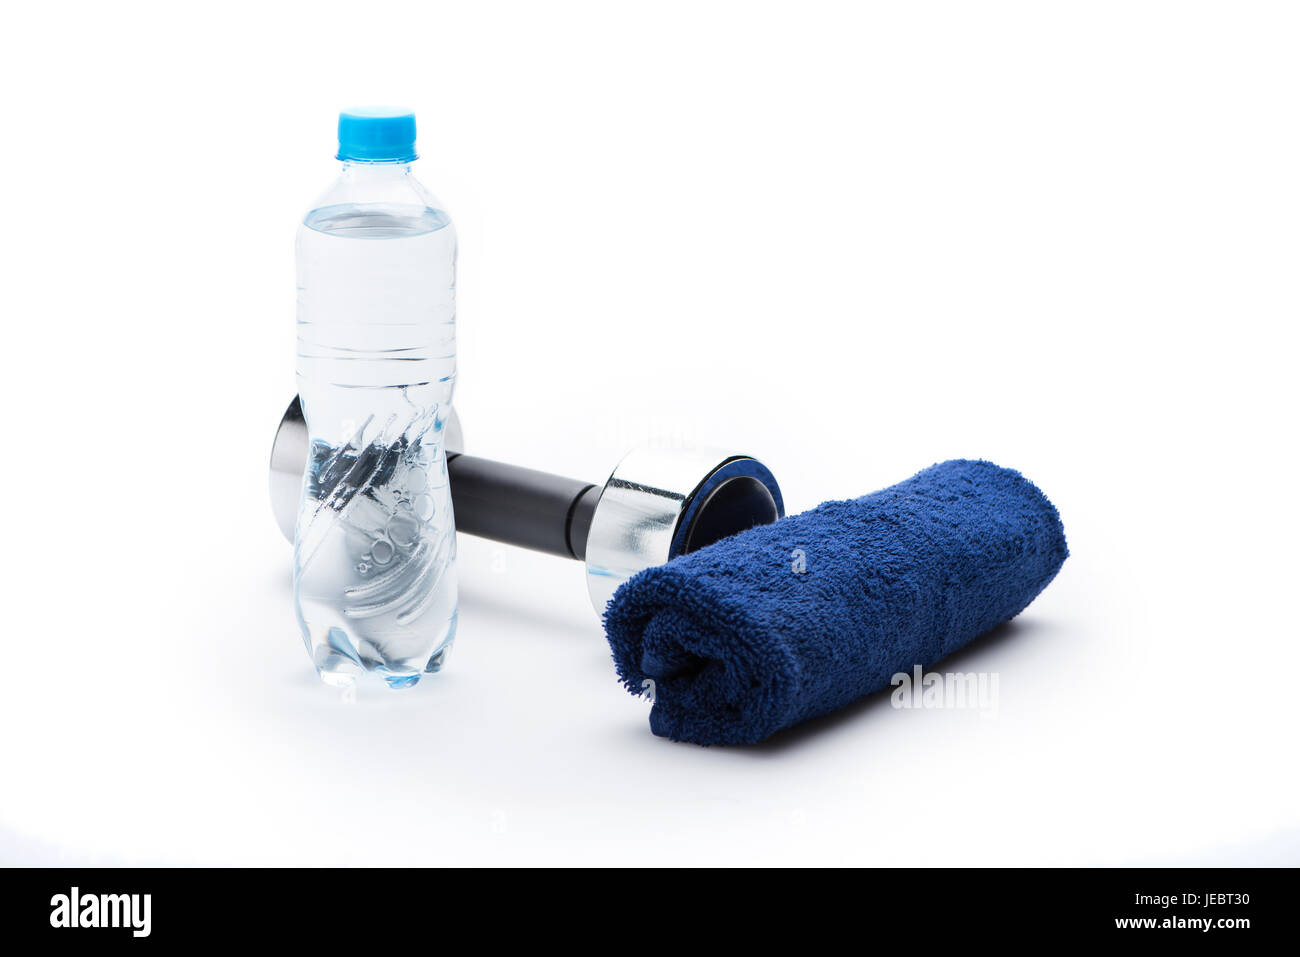 Manubrio metallico, asciugamano e una bottiglia con acqua isolato su bianco. Le attrezzature di sport e di uno stile di vita sano concetto Foto Stock